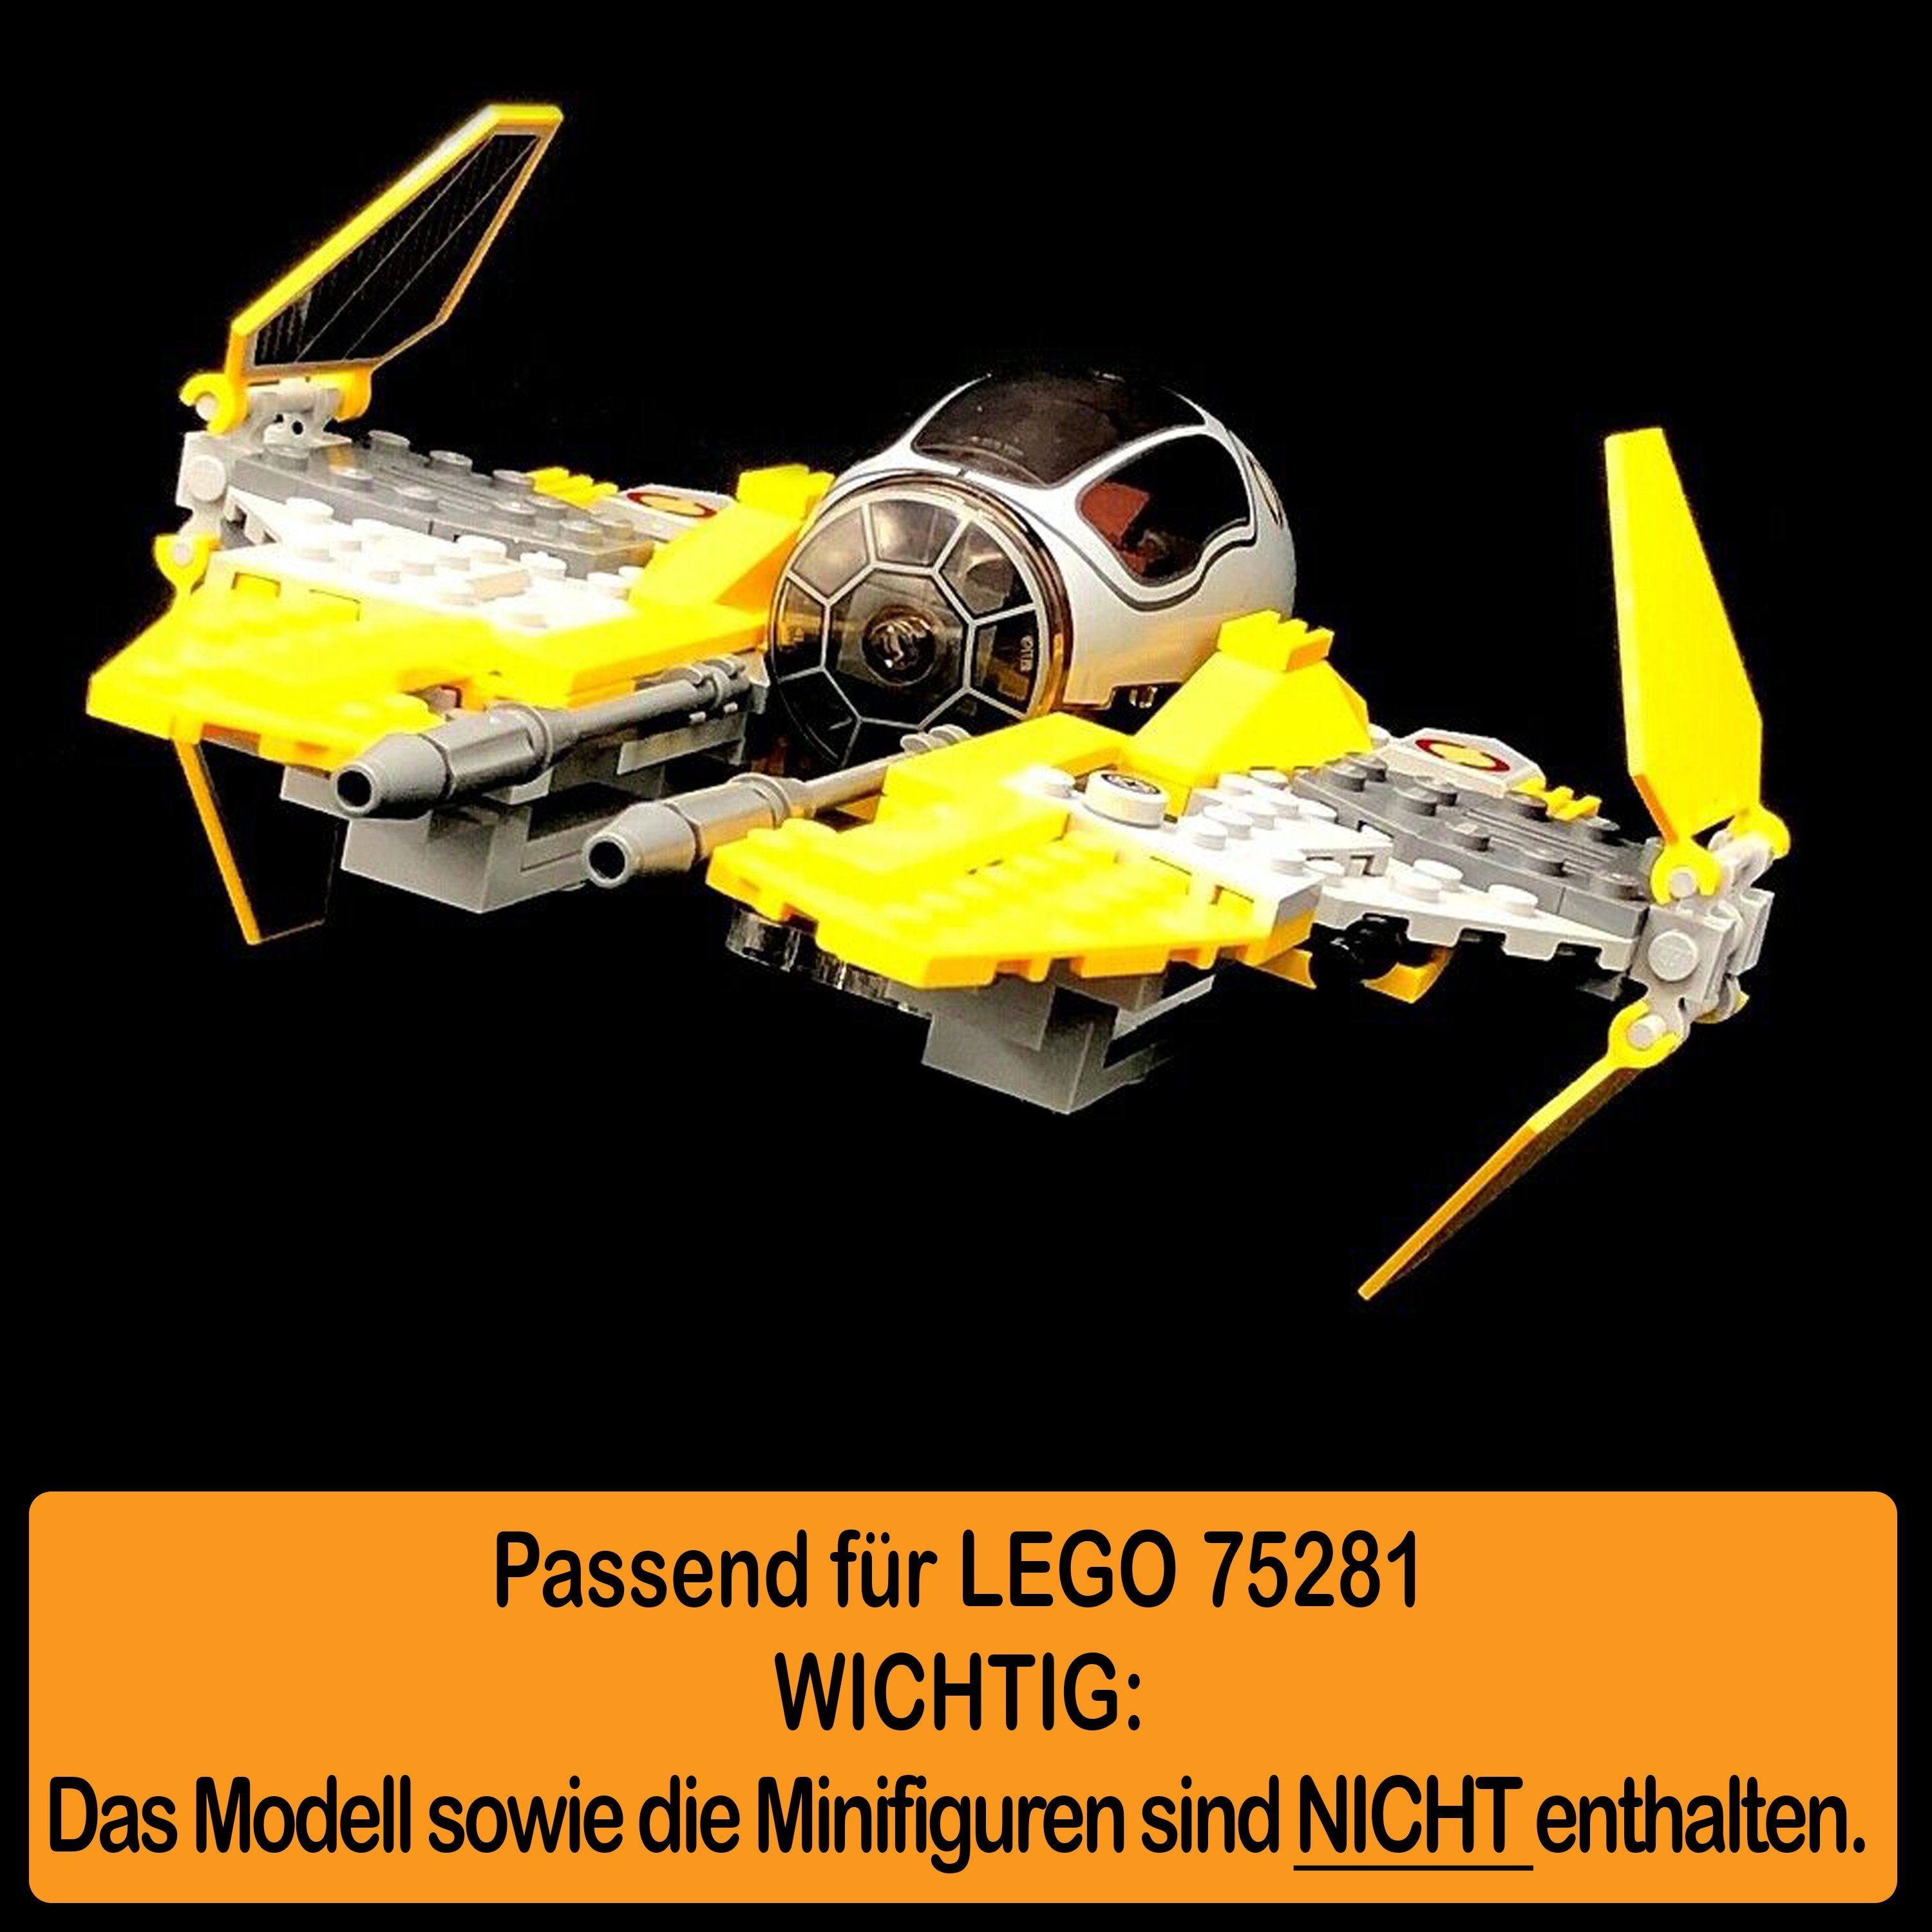 AREA17 Made Stand Germany einstellbar, Positionen zum Interceptor selbst zusammenbauen), (verschiedene Jedi für Acryl Anakin´s Winkel in Standfuß und 75281 100% Display LEGO